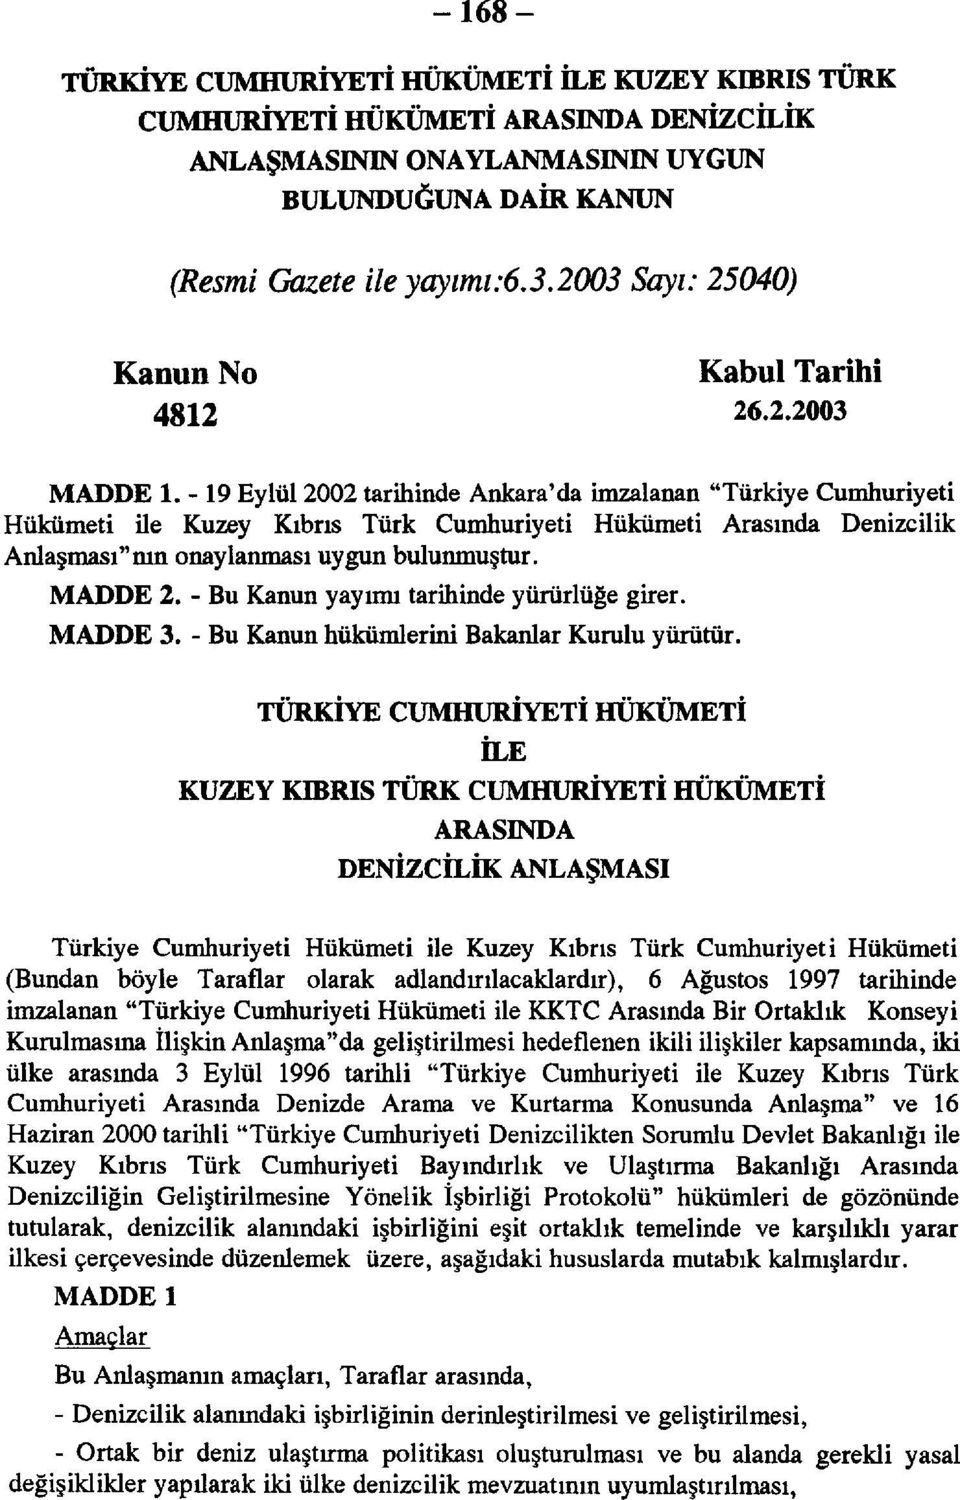 - 19 Eylül 2002 tarihinde Ankara'da imzalanan "Türkiye Cumhuriyeti Hükümeti ile Kuzey Kıbrıs Türk Cumhuriyeti Hükümeti Arasında Denizcilik Anlaşması"nın onaylanması uygun bulunmuştur. MADDE 2.